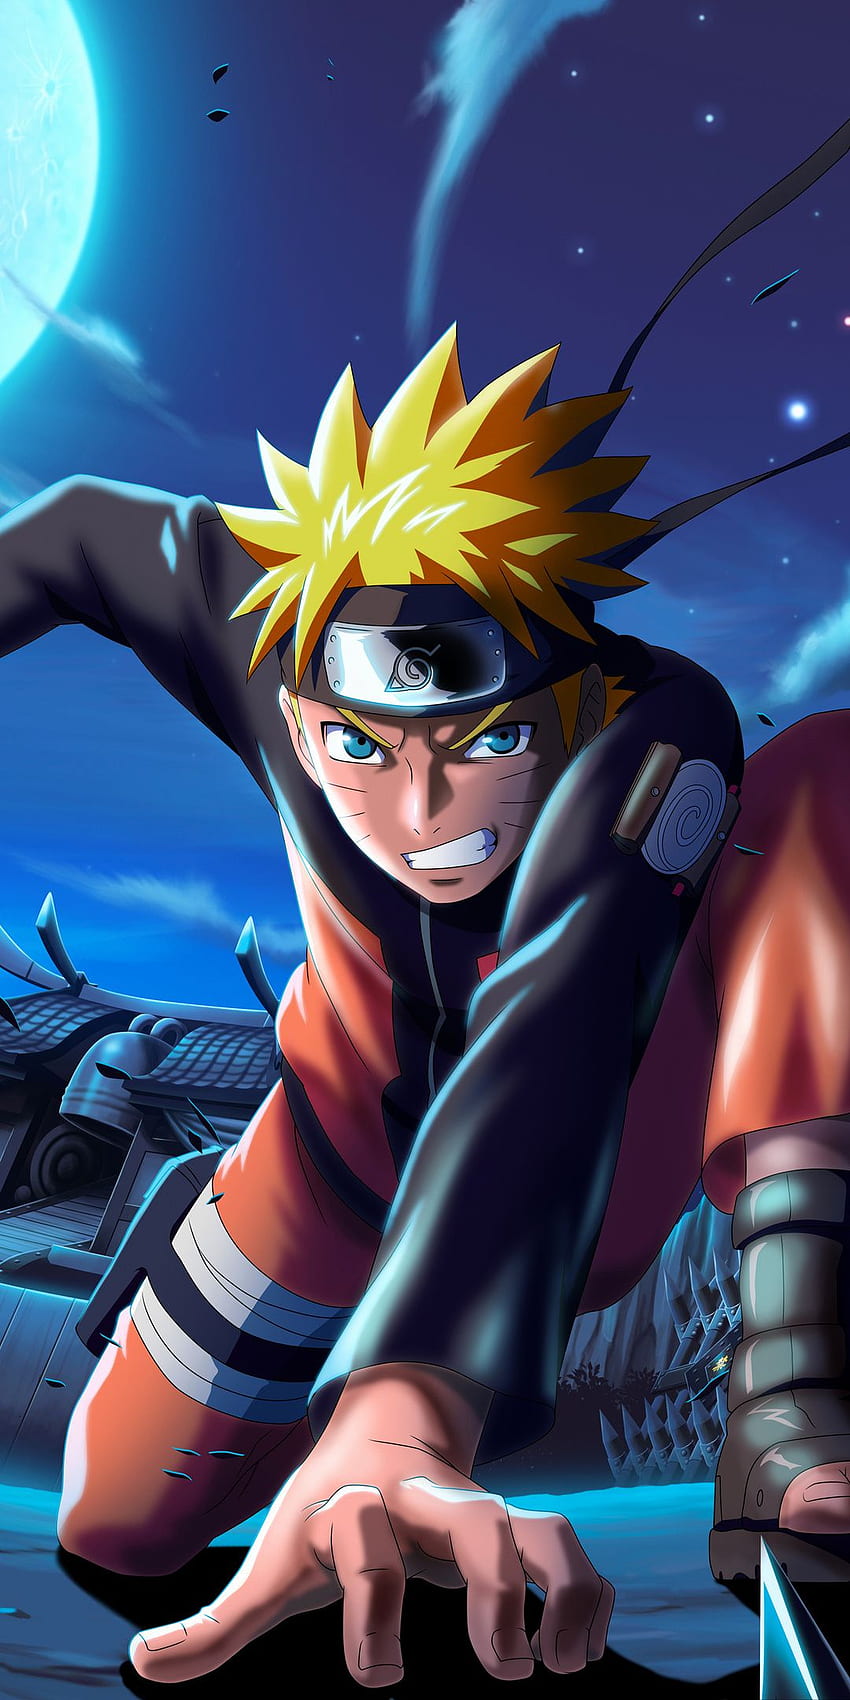 Naruto X Boruto Ninja Voltage là trò chơi mobile vô cùng hot hiện nay! Với đồ họa đẹp mắt, cốt truyện hấp dẫn và lối chơi đa dạng, đây là trò chơi không thể bỏ qua cho bất kỳ fan Naruto nào! Bấm ngay vào ảnh liên quan để khám phá thêm về trò chơi này!